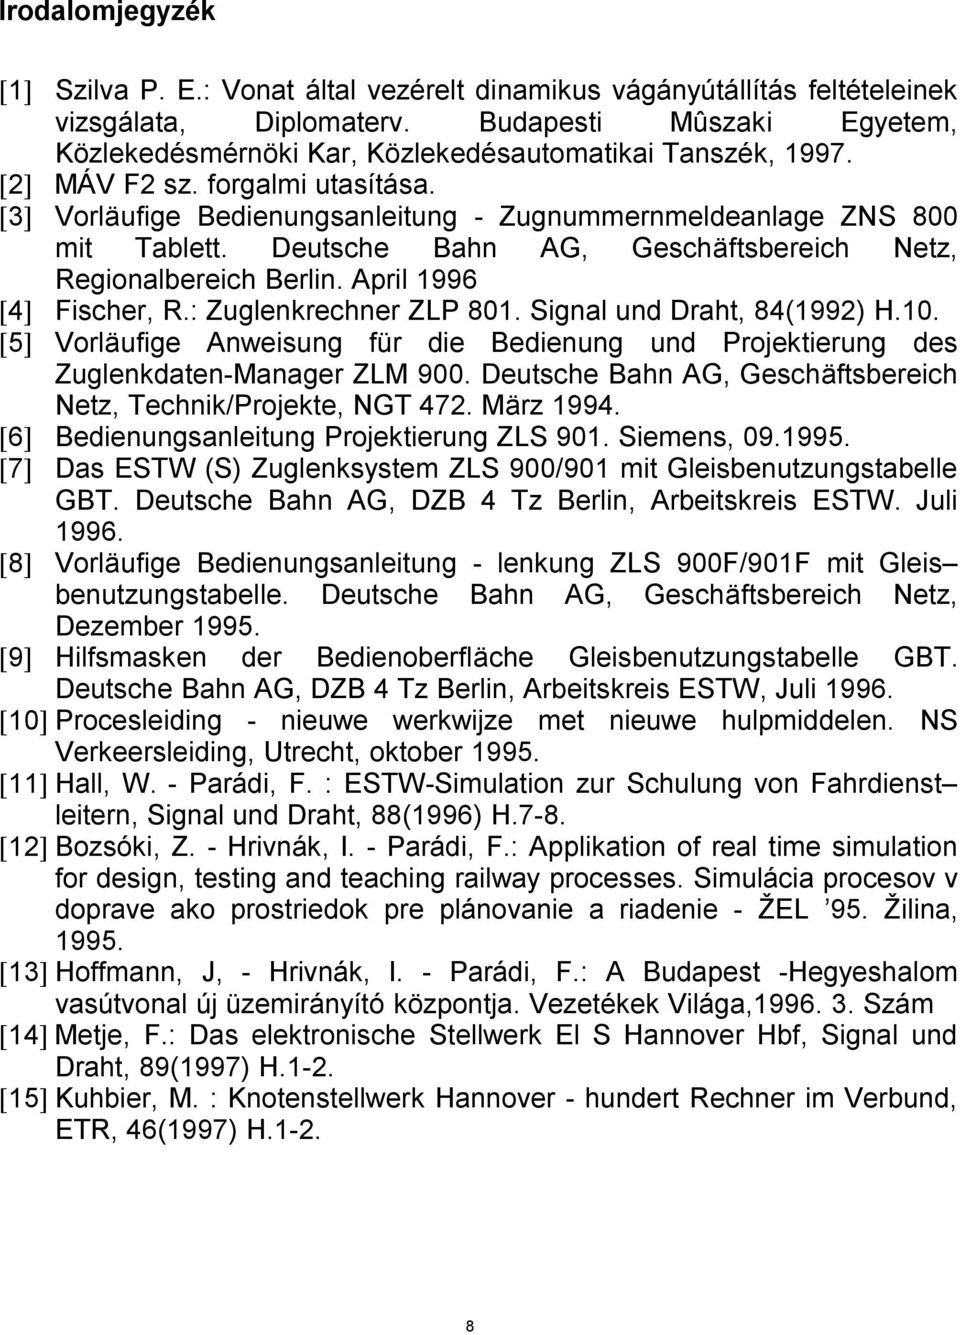 Deutsche Bahn AG, Geschäftsbereich Netz, Regionalbereich Berlin. April 1996 [4] Fischer, R.: Zuglenkrechner ZLP 801. Signal und Draht, 84(1992) H.10.